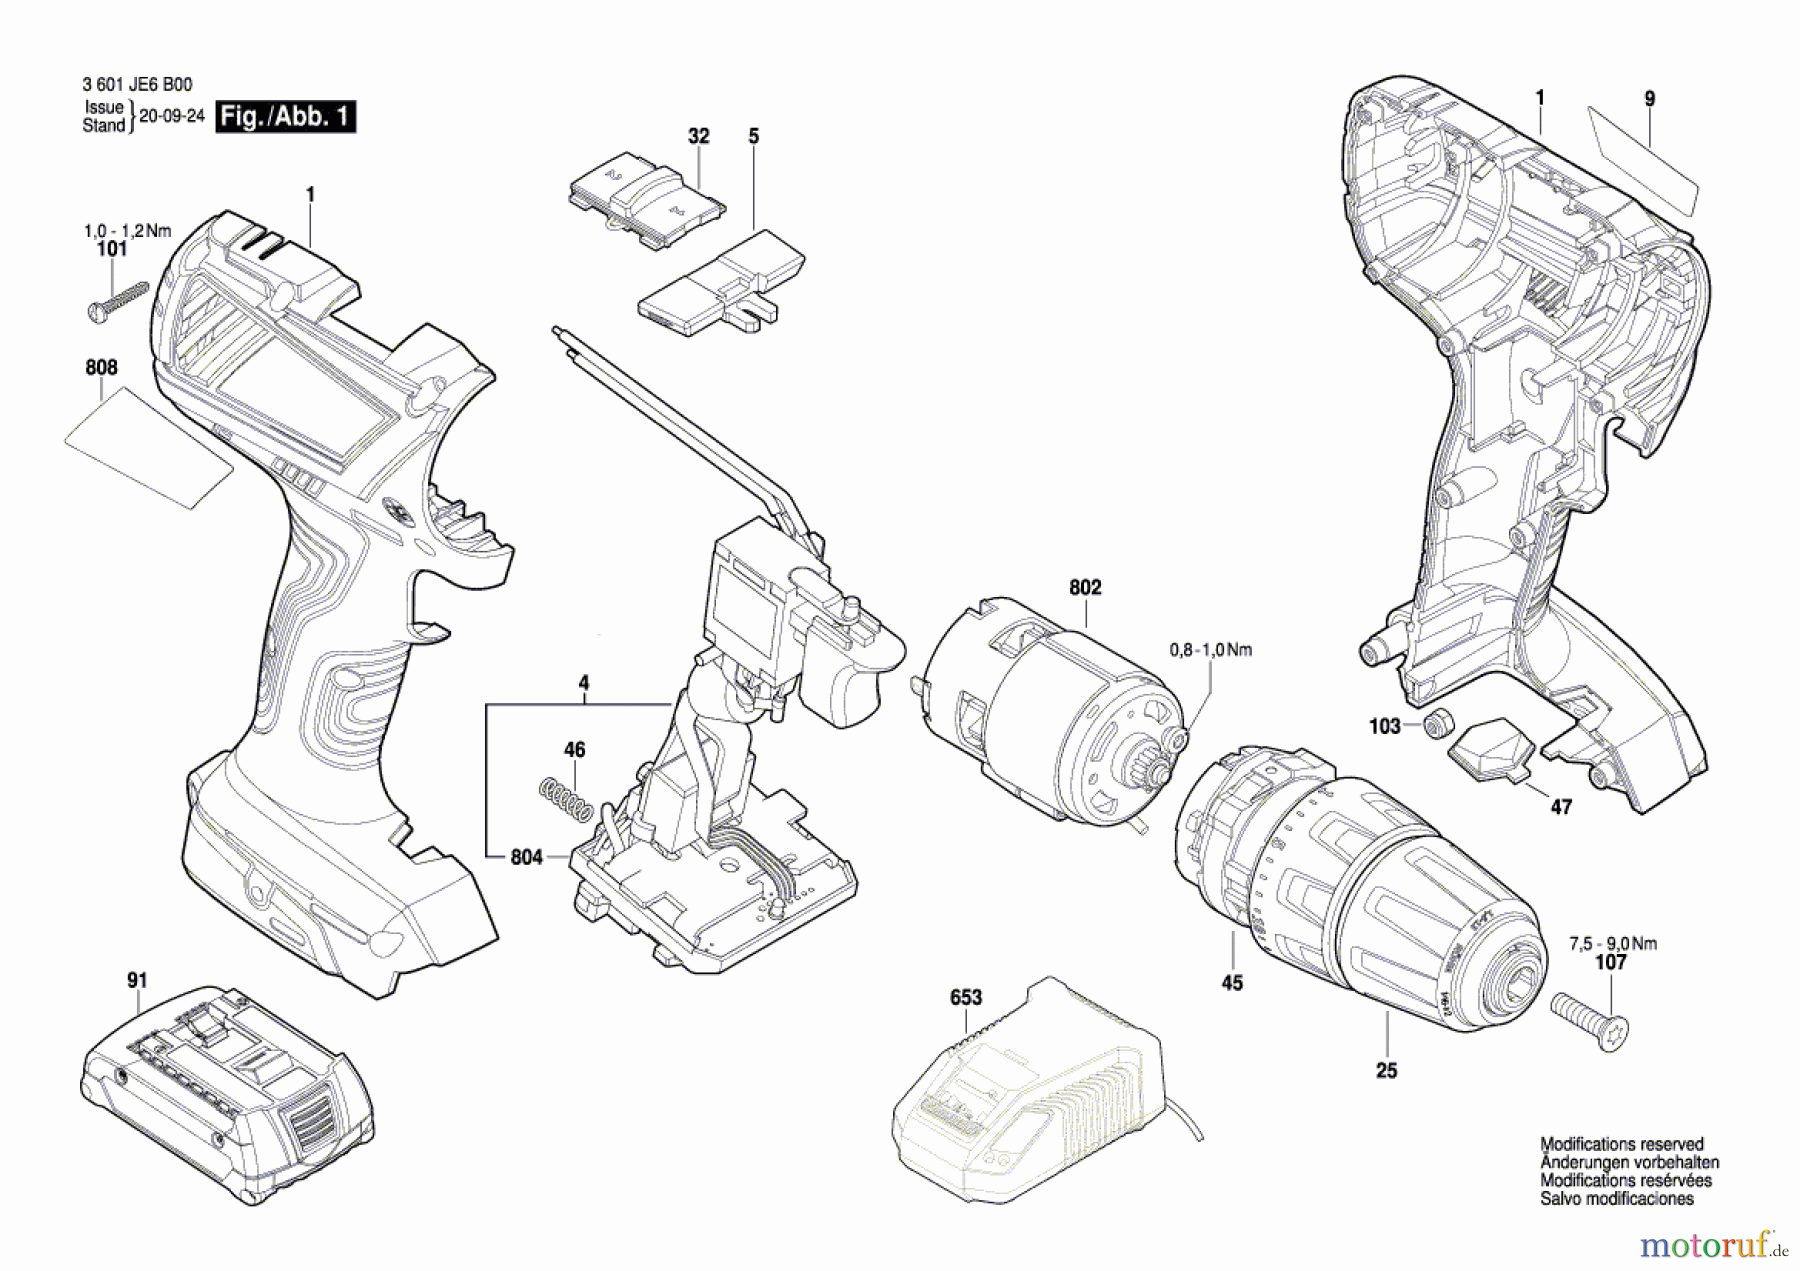  Bosch Akku Werkzeug Gw-Akku-Schrauber L18 BS Seite 1